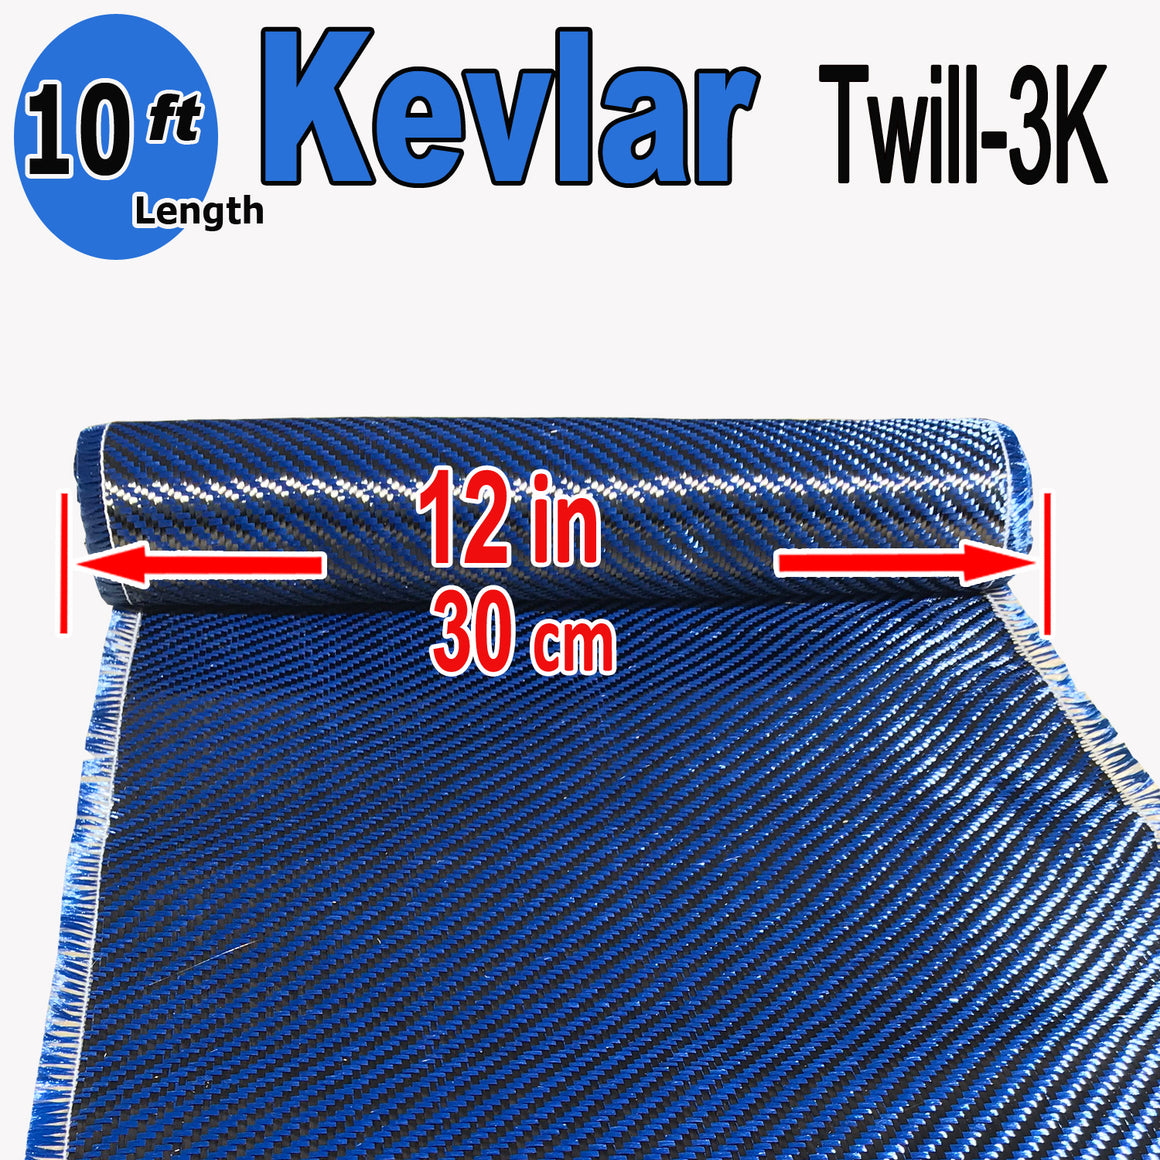 KEVLAR ARAMID Fabric - 4 in x 1 ft - Ylw/Blk Twill - 240g/m2 - 3K TOW 